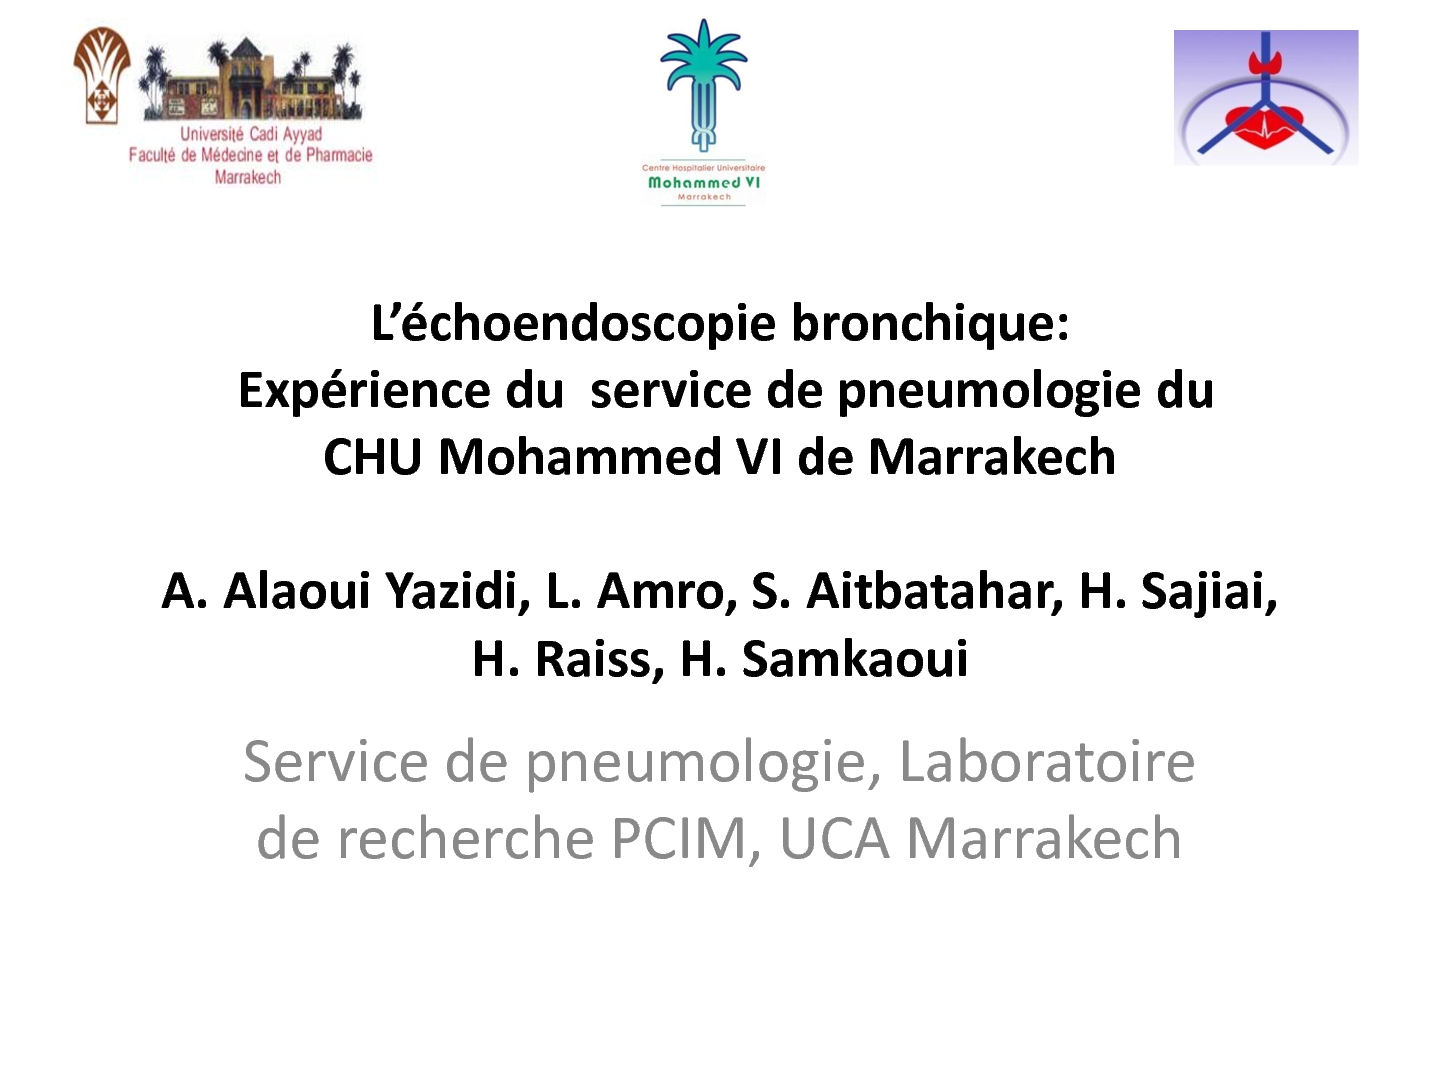 L'écho-endoscopie bronchique Expérience du service de pneumologie du CHU Mohammed VI de Marrakech. A. ALAOUI YAZIDI